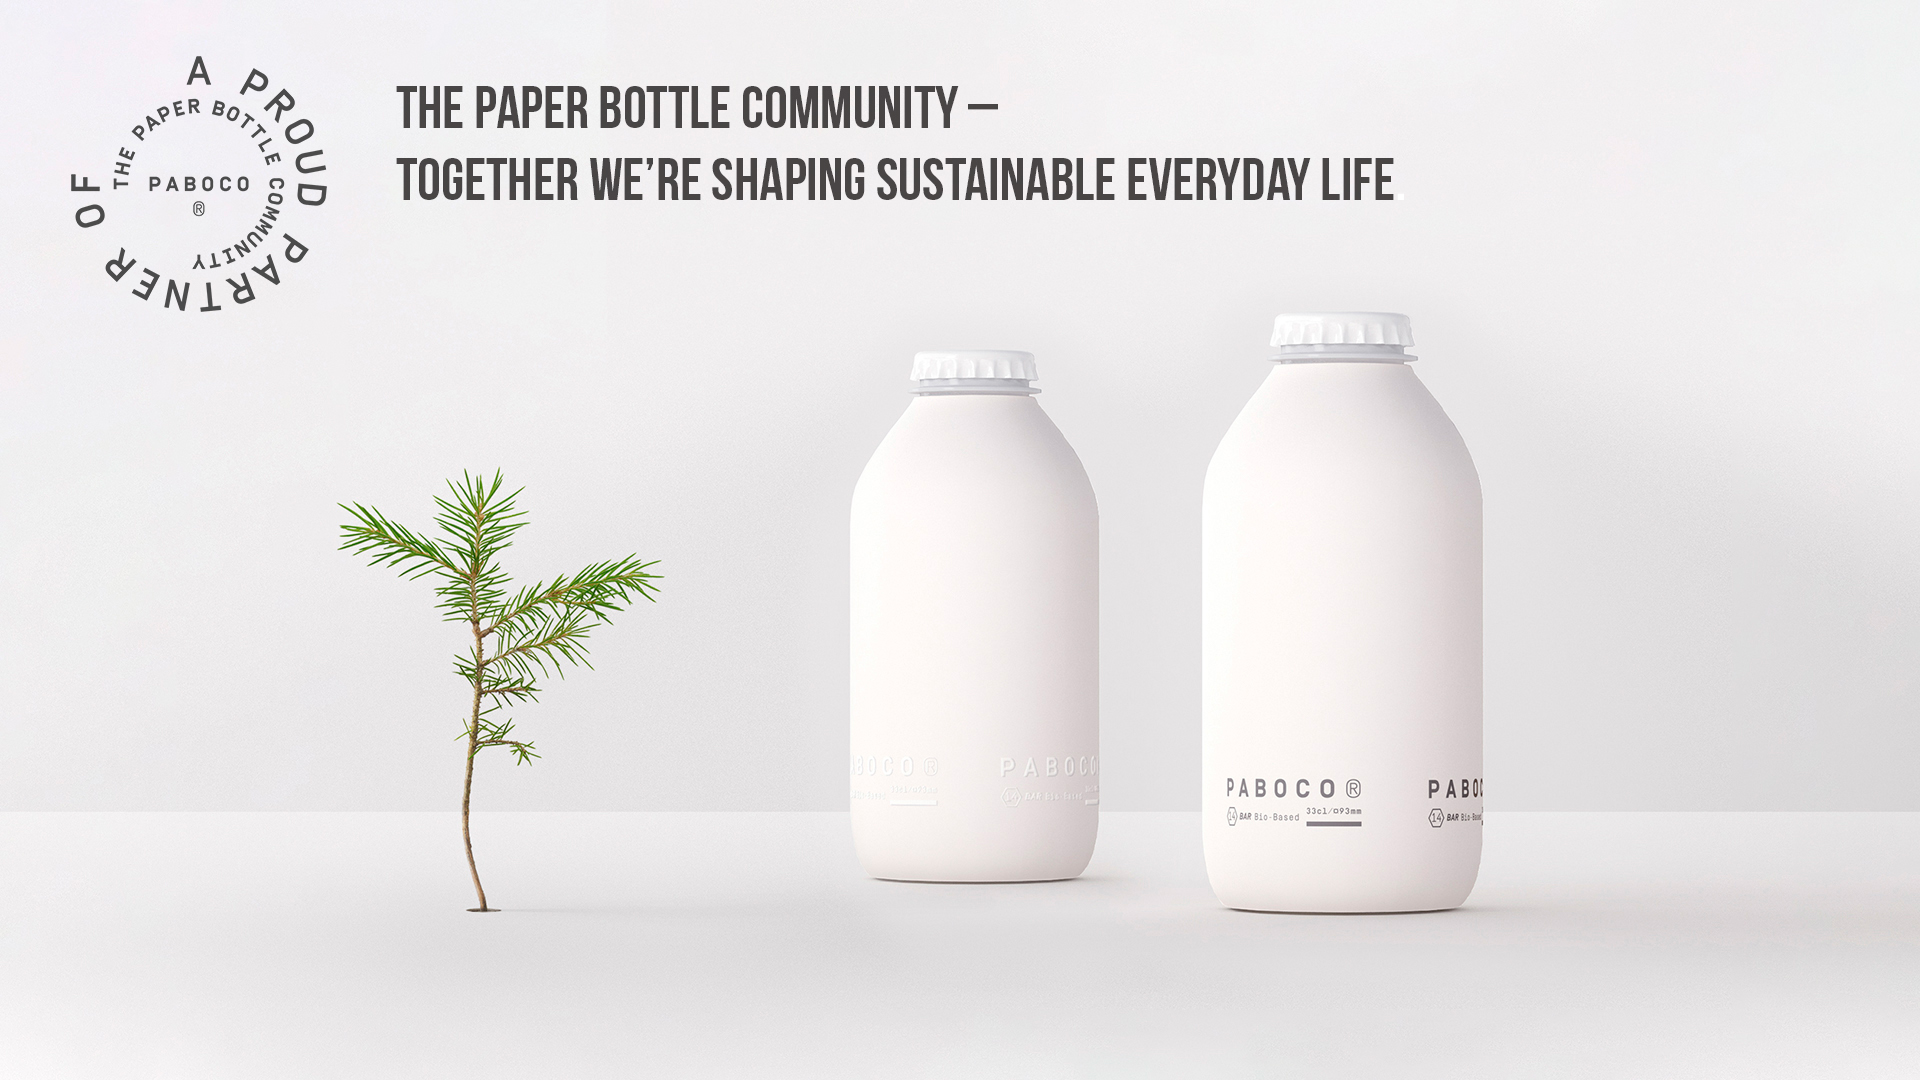 Revolucionarna inovacija: Teknos sodeluje z velikimi blagovnimi znamkami pri razvoju papirnate steklenice, ki se lahko reciklira